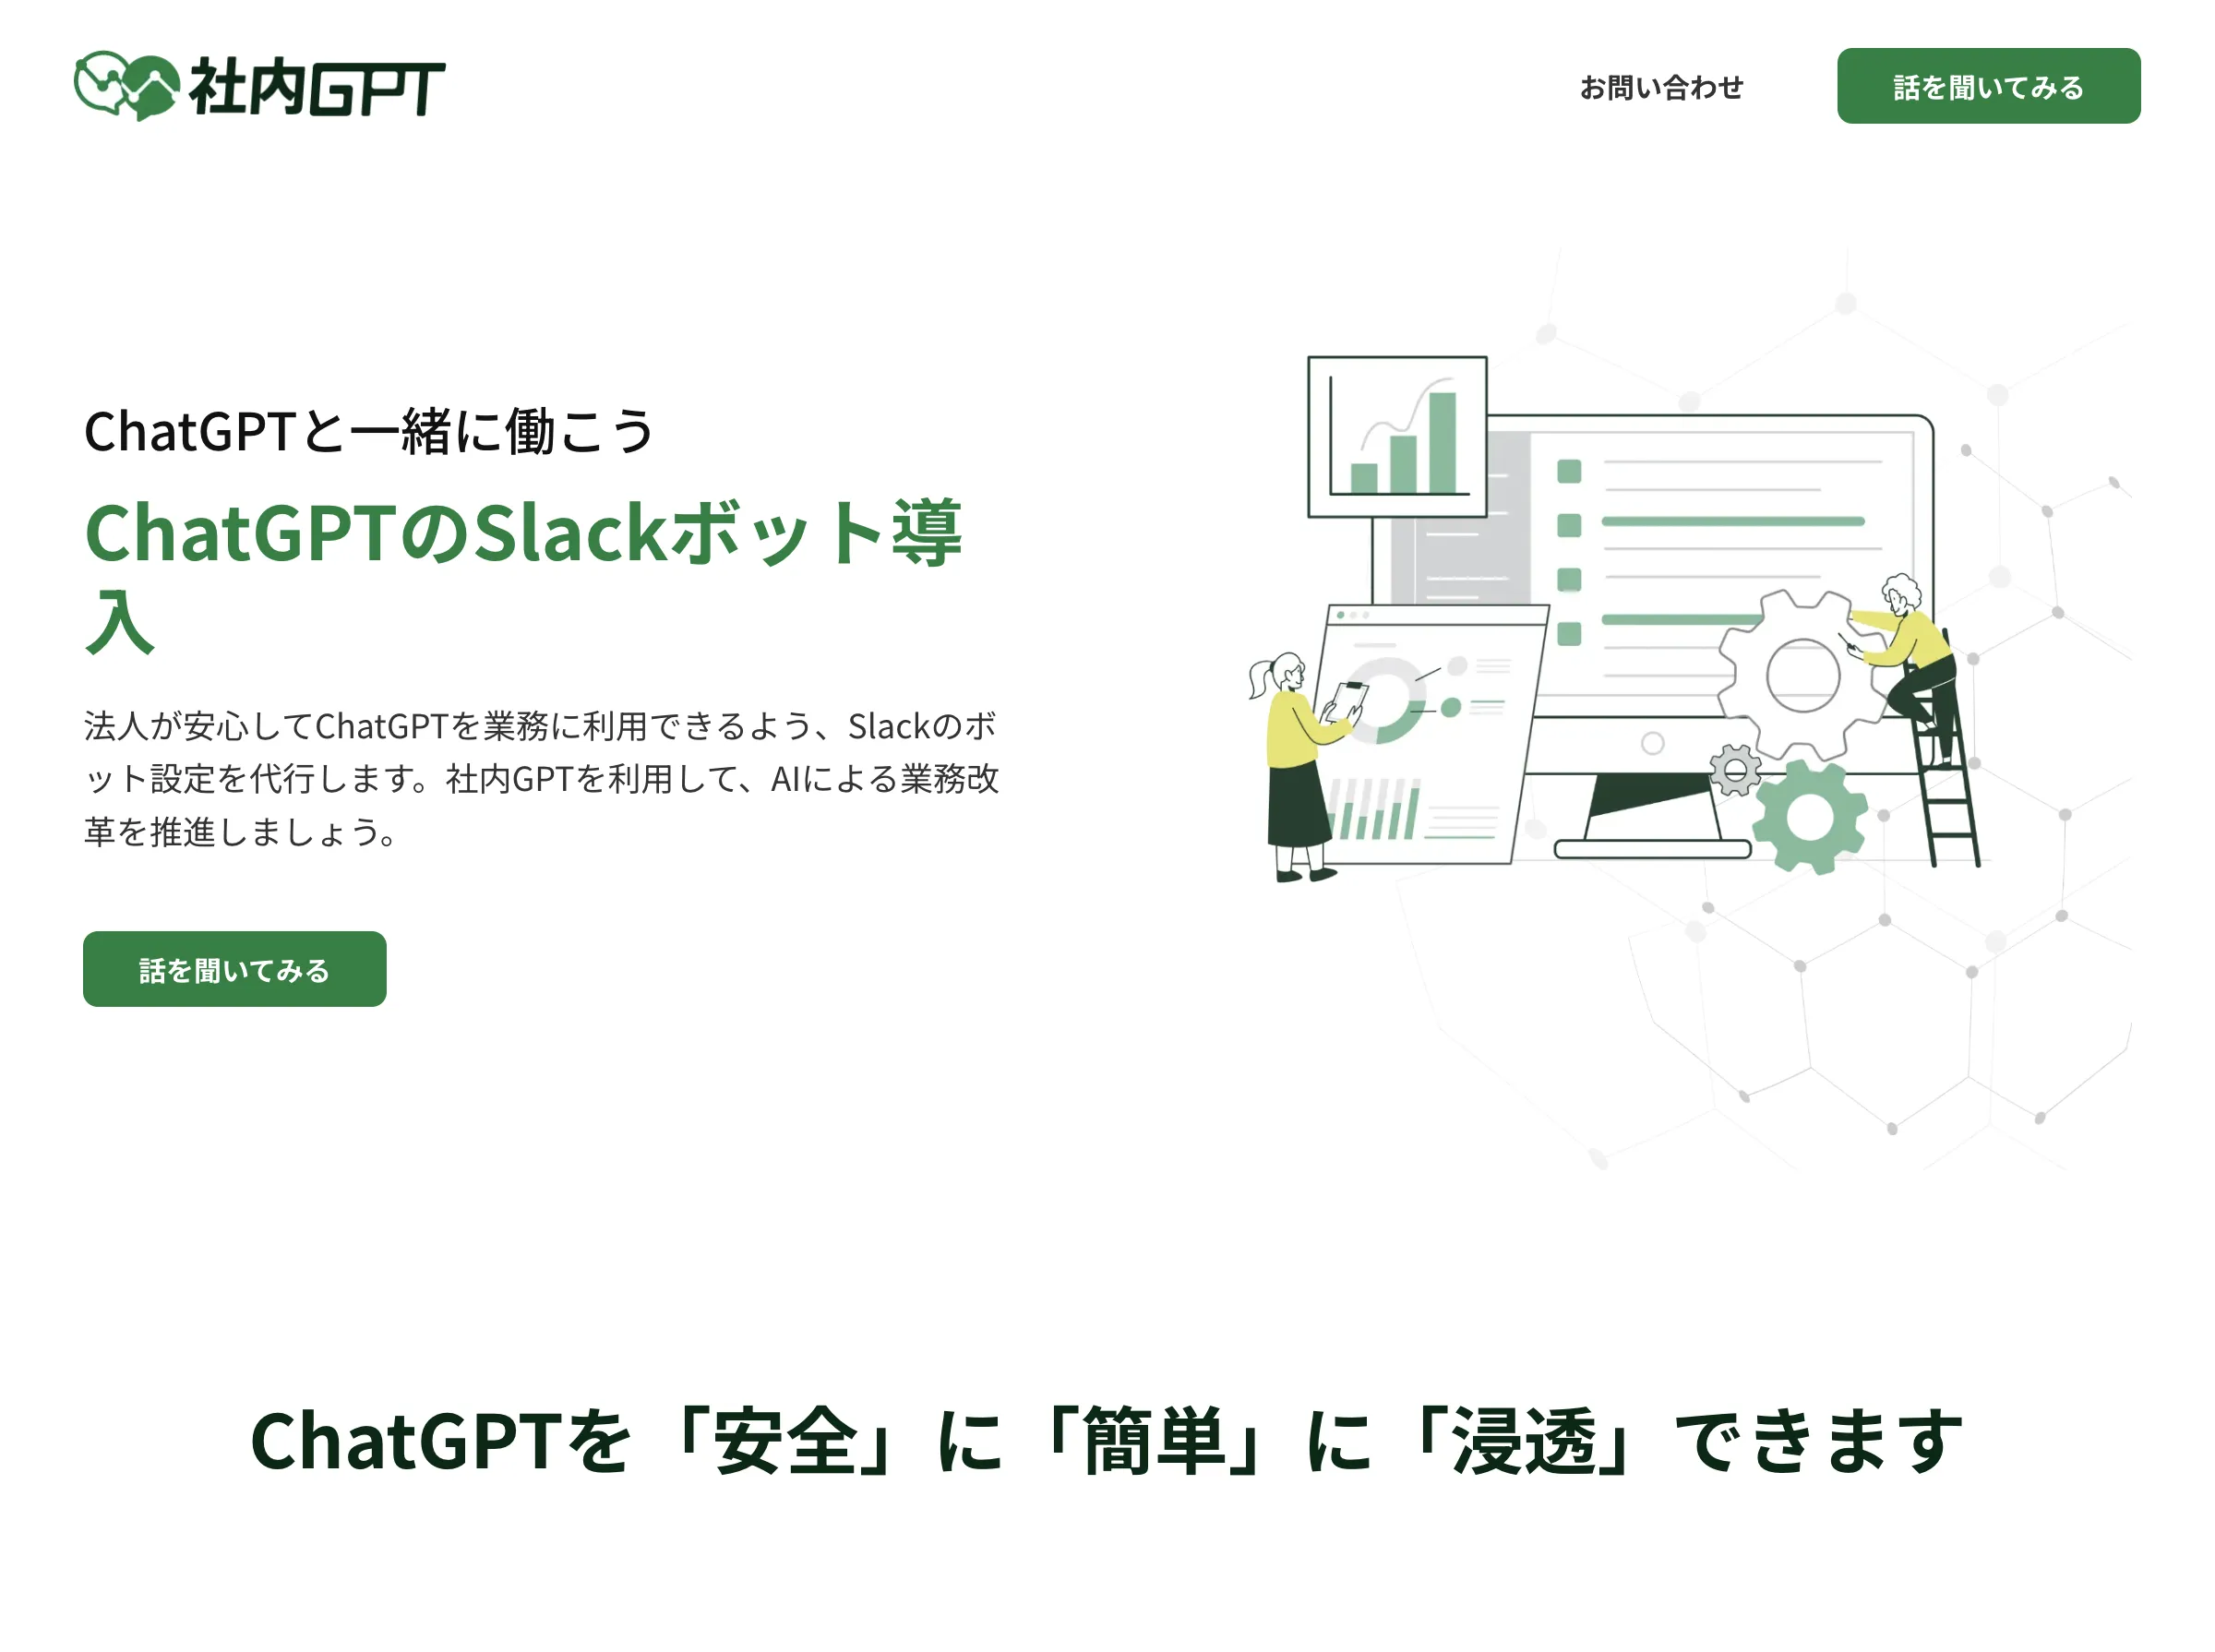 社内GPT(株式会社Hi-STORY)